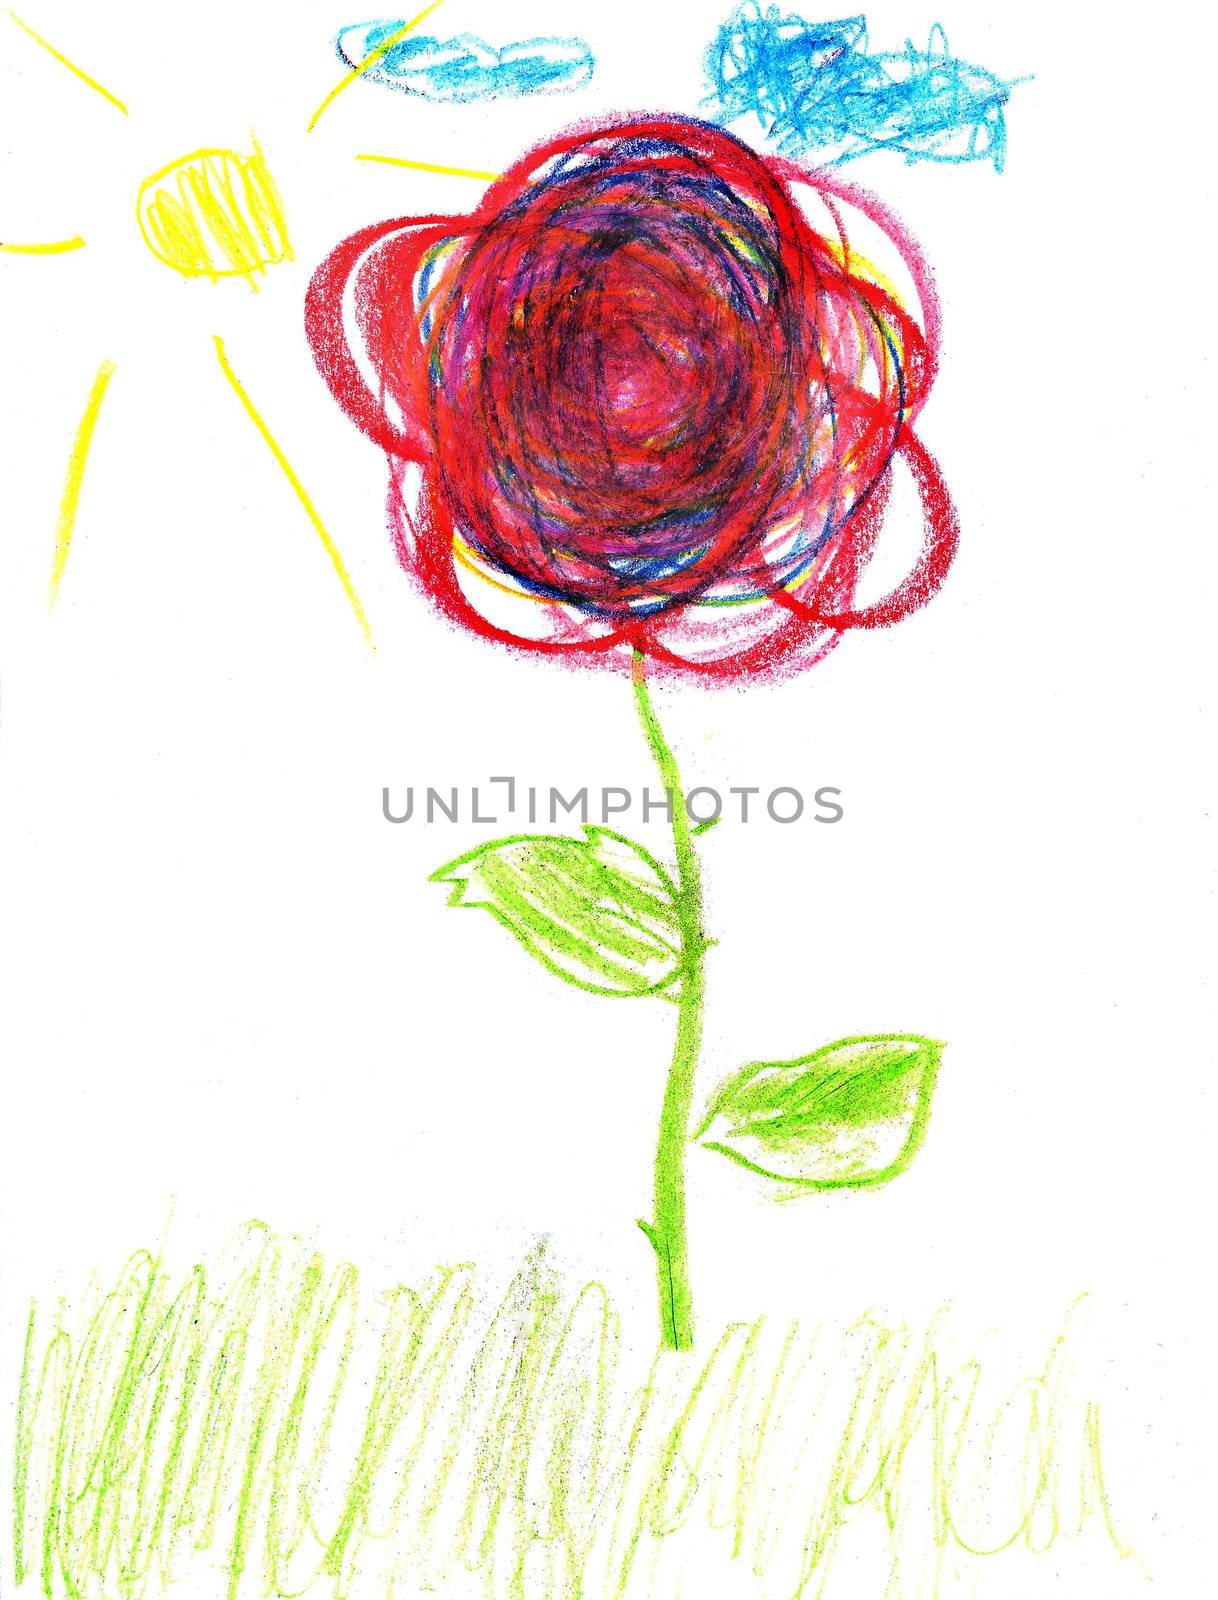 Cute kids drawing of a flower by Strekalova